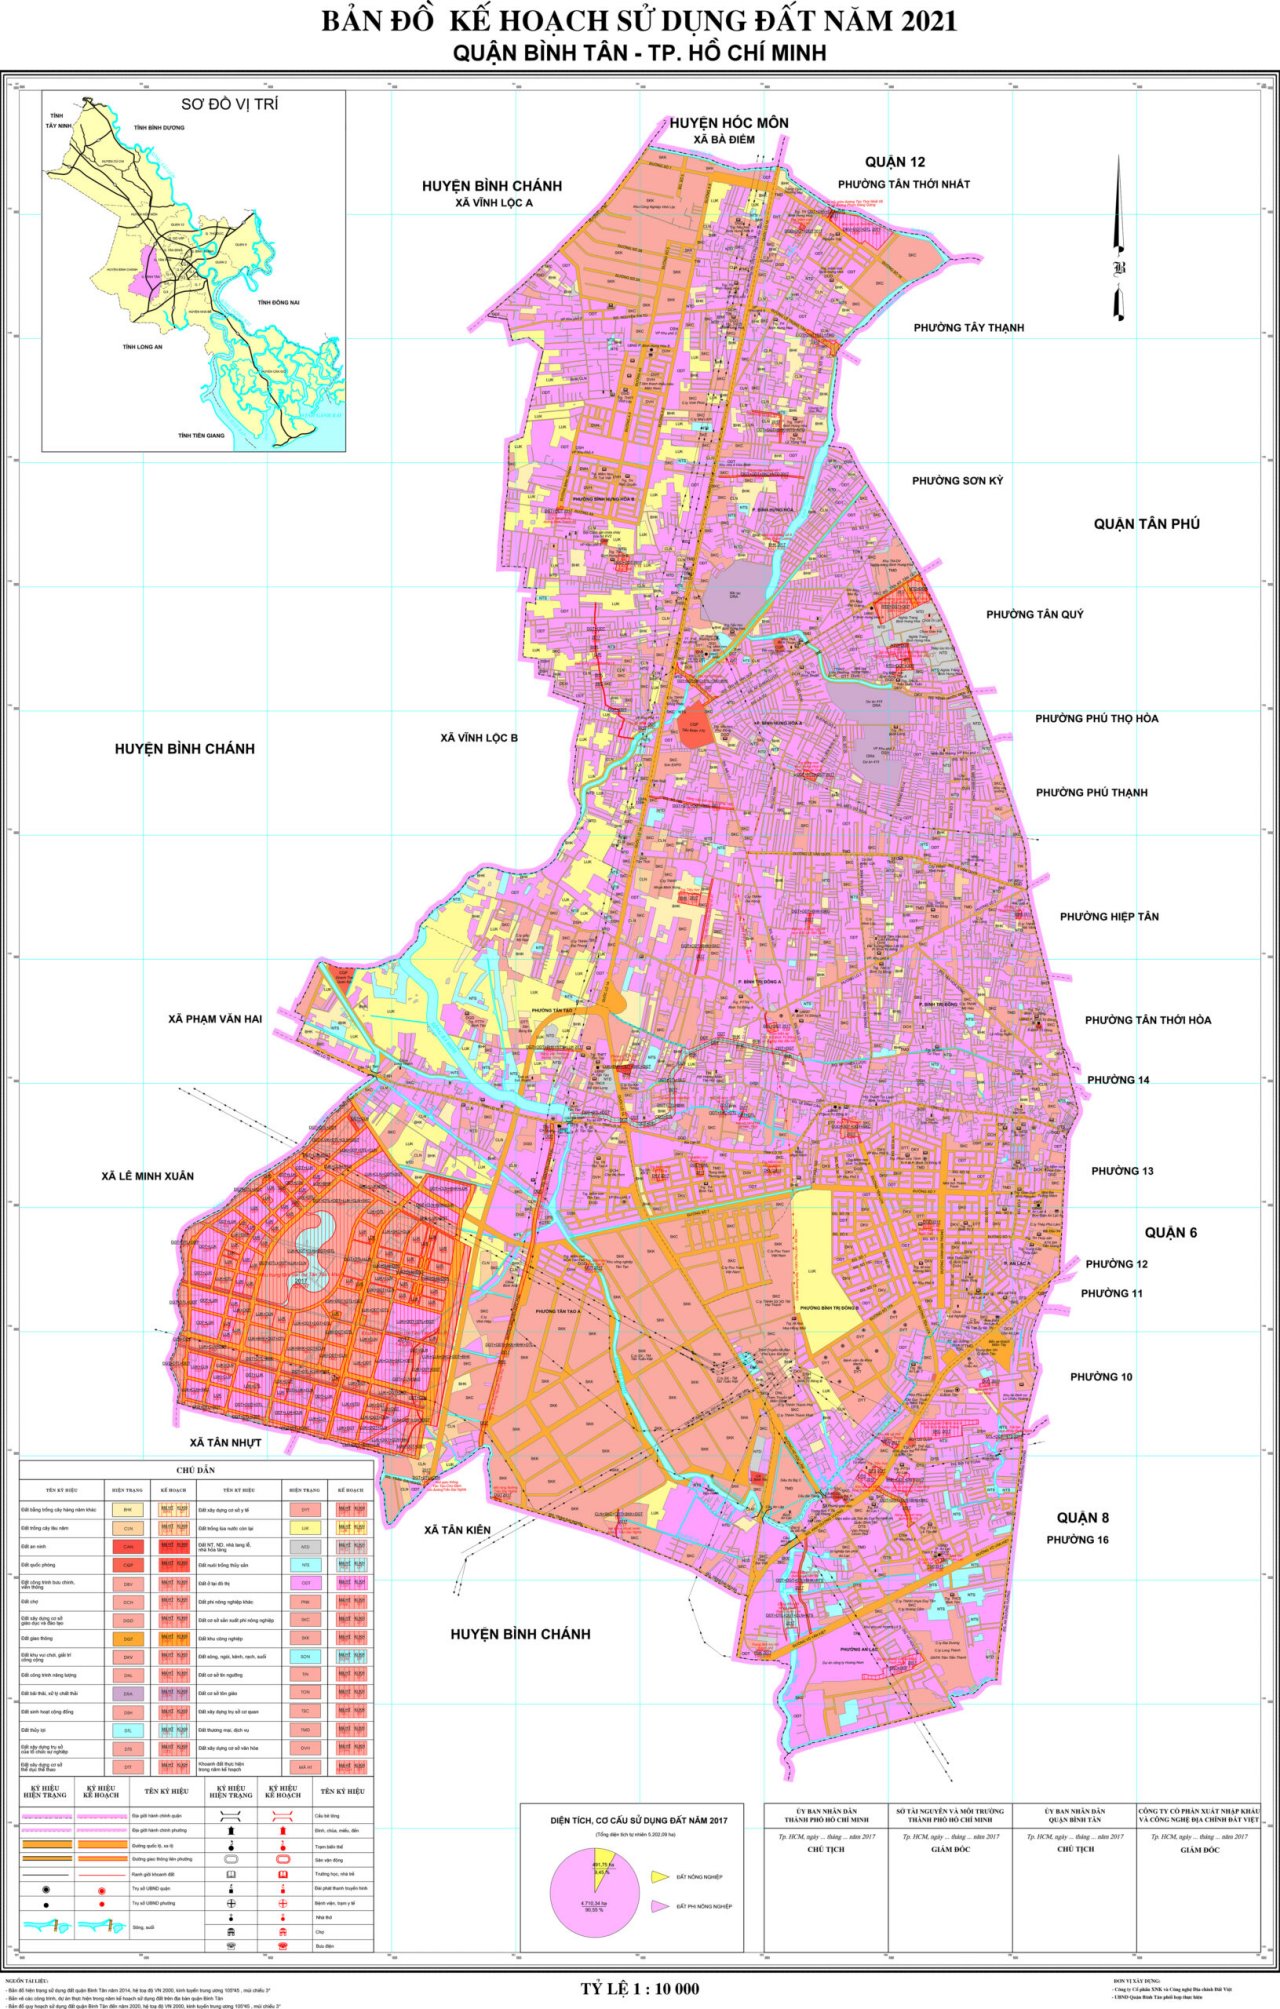 Bản đồ quy hoạch sử dụng đất Quận Bình Tân năm 2021